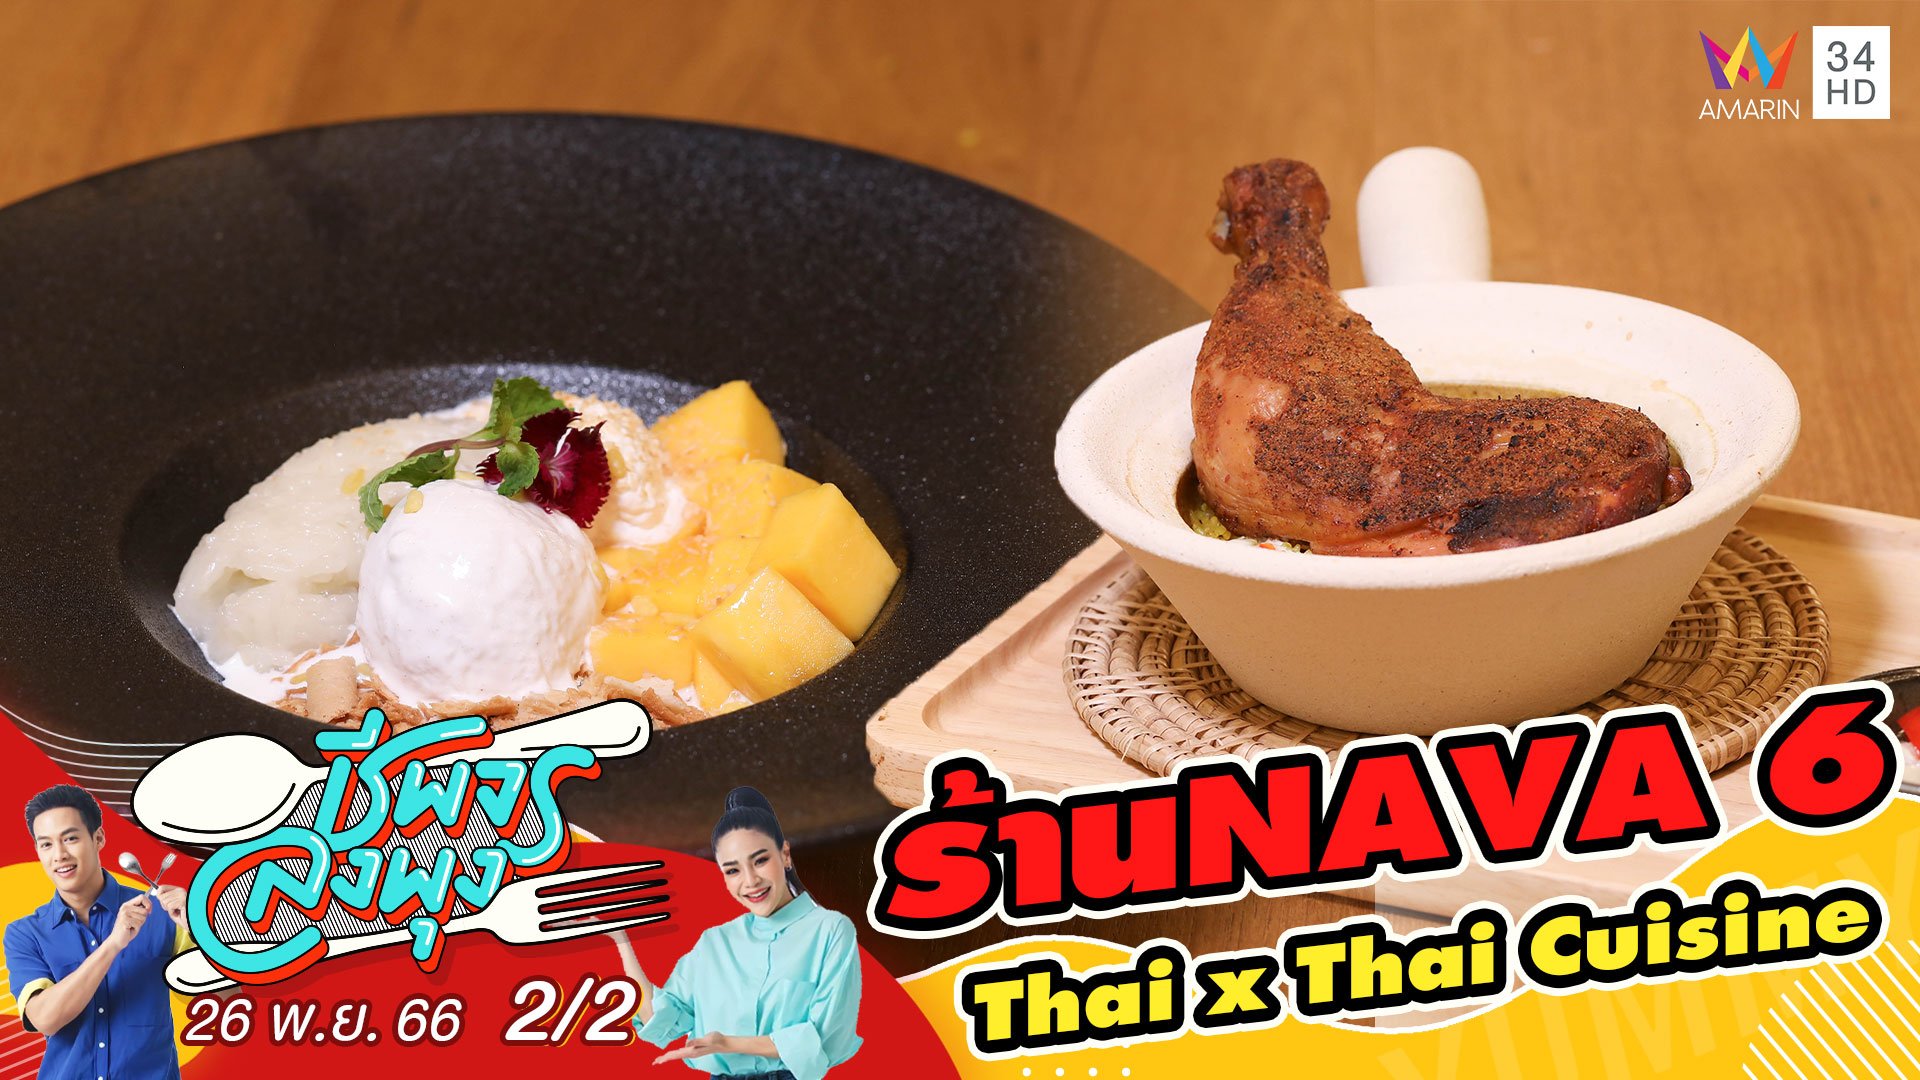 ร้าน NAVA6 - Thai x Thai Cuisine  | ชีพจรลงพุง | 26 พ.ย. 66 (2/2) | AMARIN TVHD34